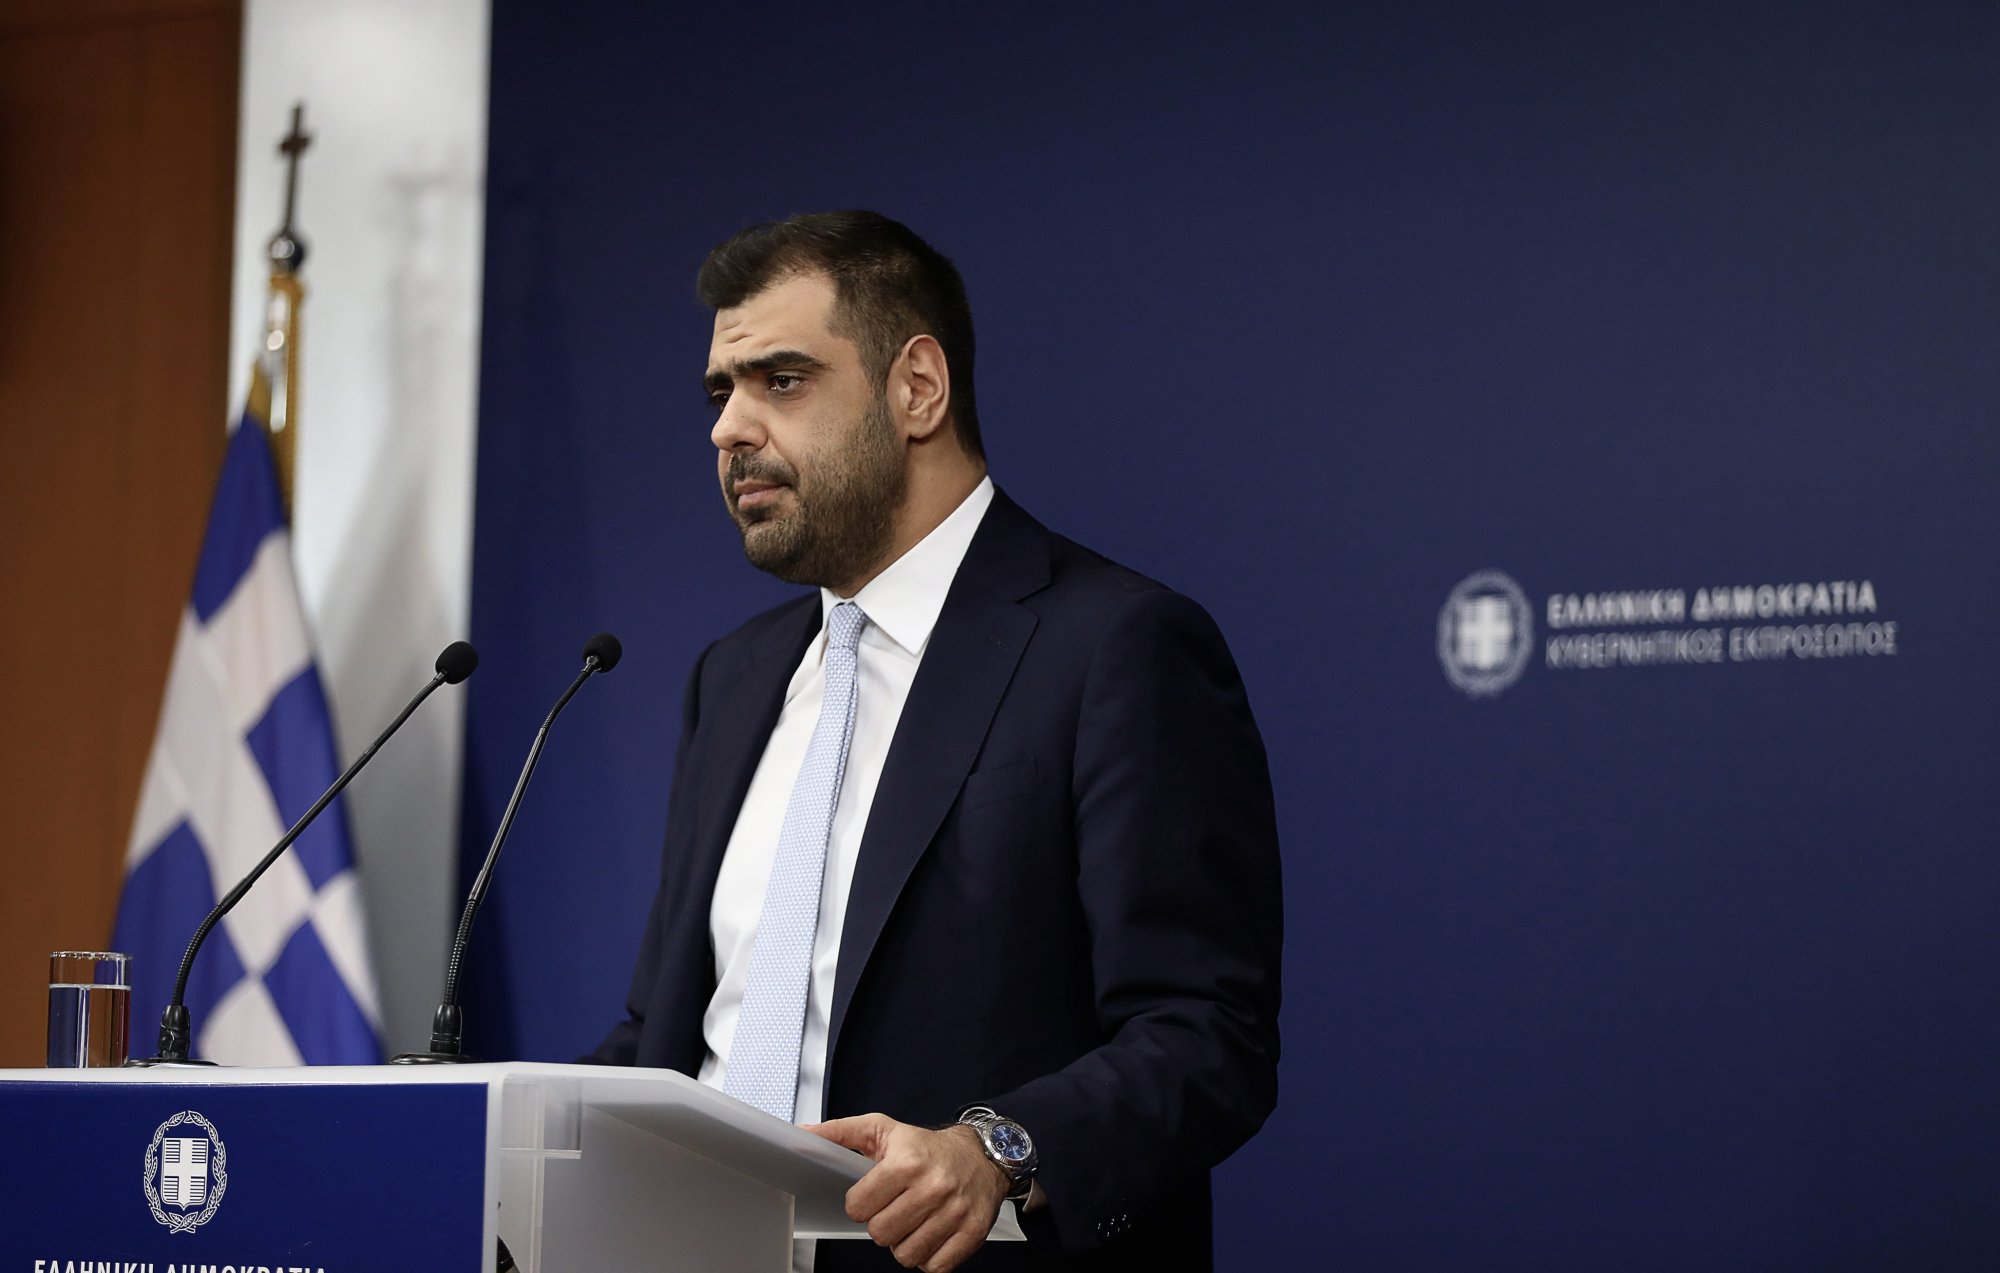 Γεμάτος ψέματα ο Κασσελάκης, λέει ο Π. Μαρινάκης - Ο πανικός ο χειρότερος σύμβουλος, απαντά ο ΣΥΡΙΖΑ